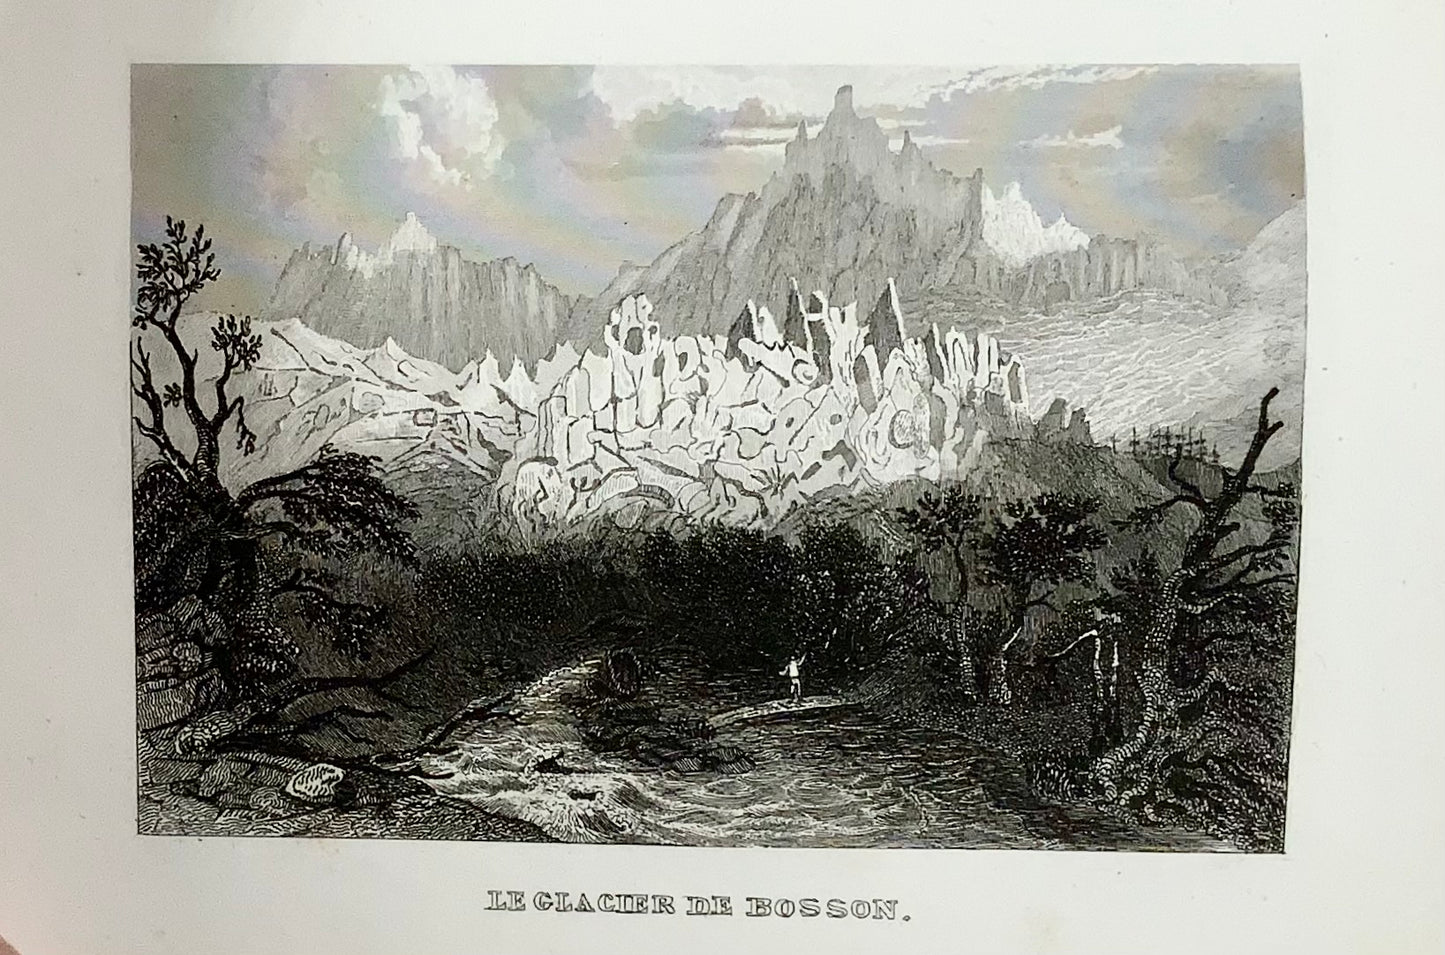 1844 Svizzera Illustrato con 100 incisioni su acciaio. Libro